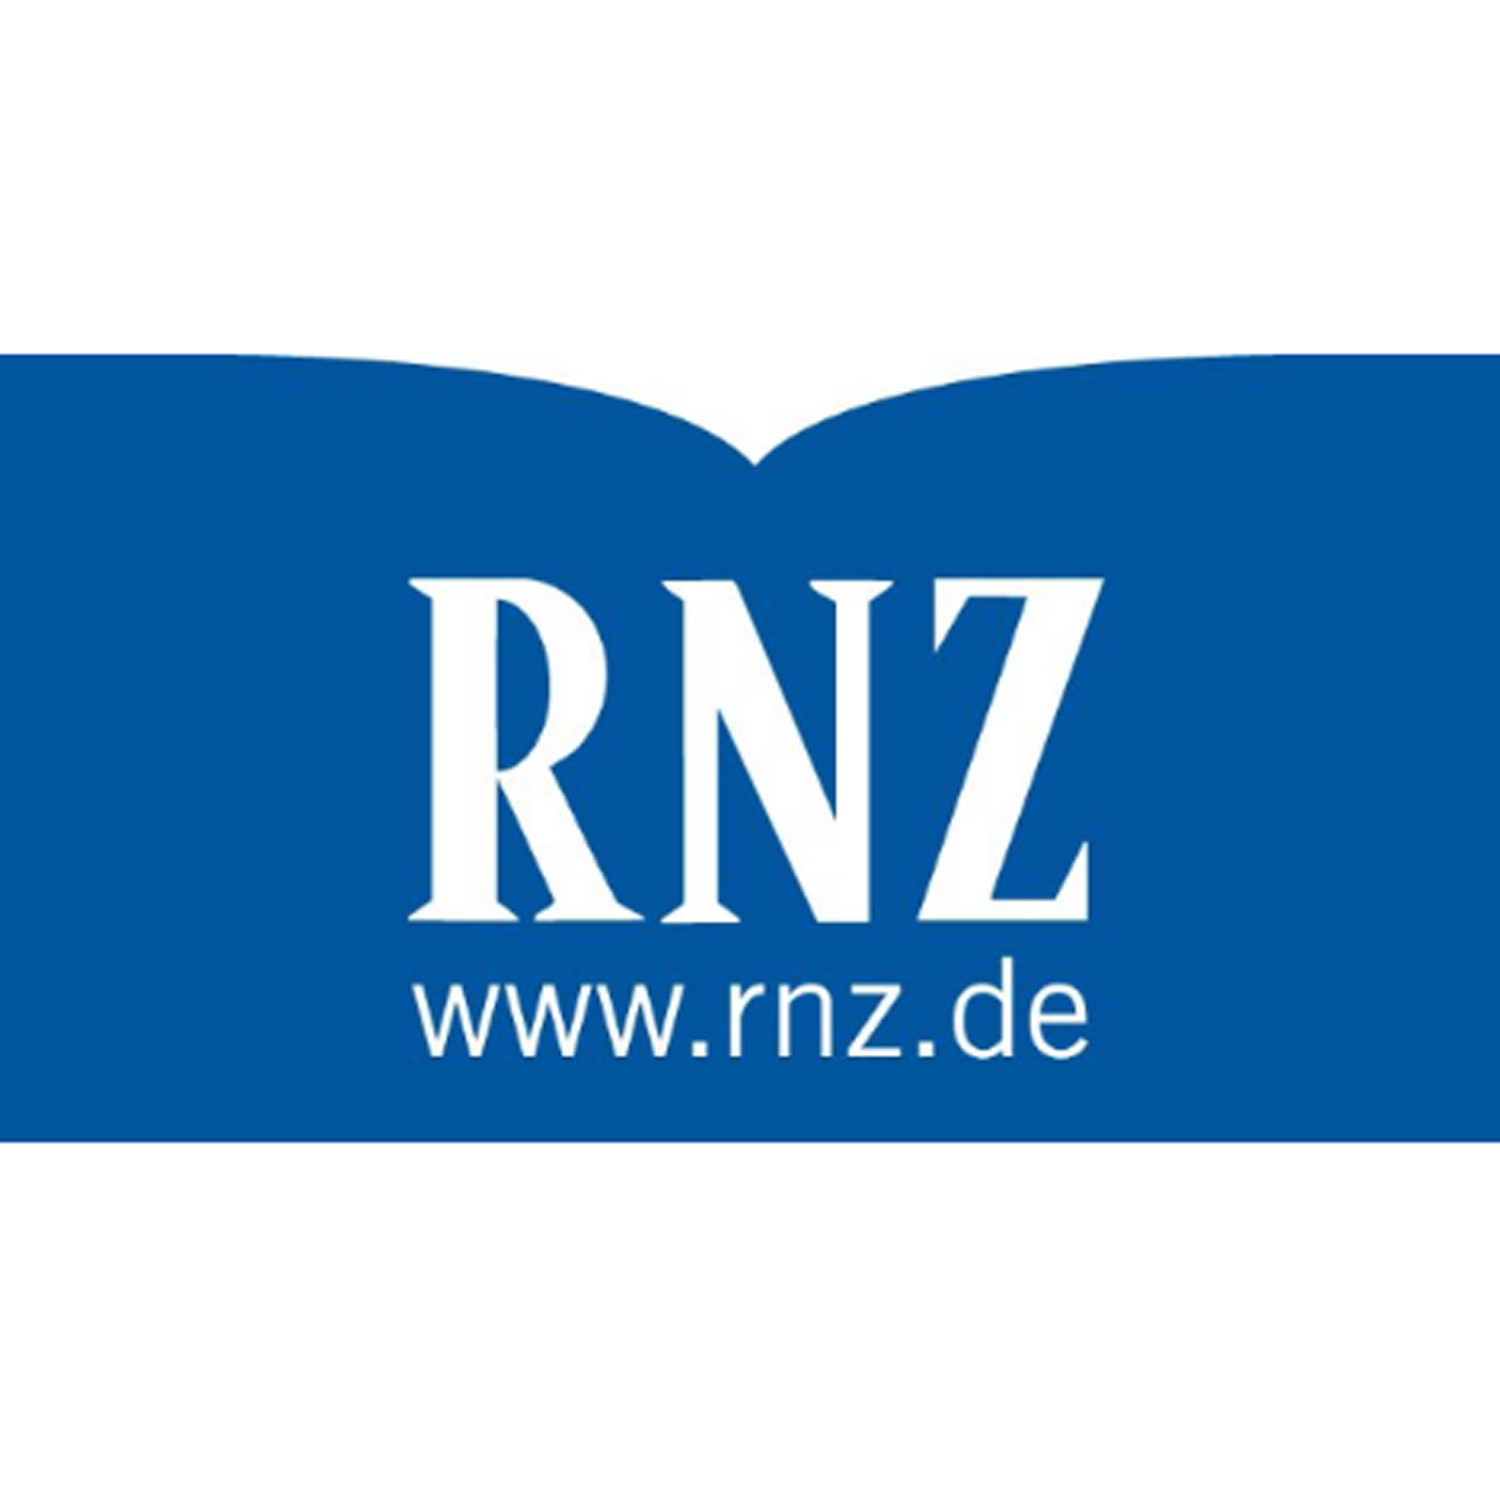 Kreistag beharrt weiterhin auf nichtöffentliche Sitzungen - Rhein-Neckar Zeitung